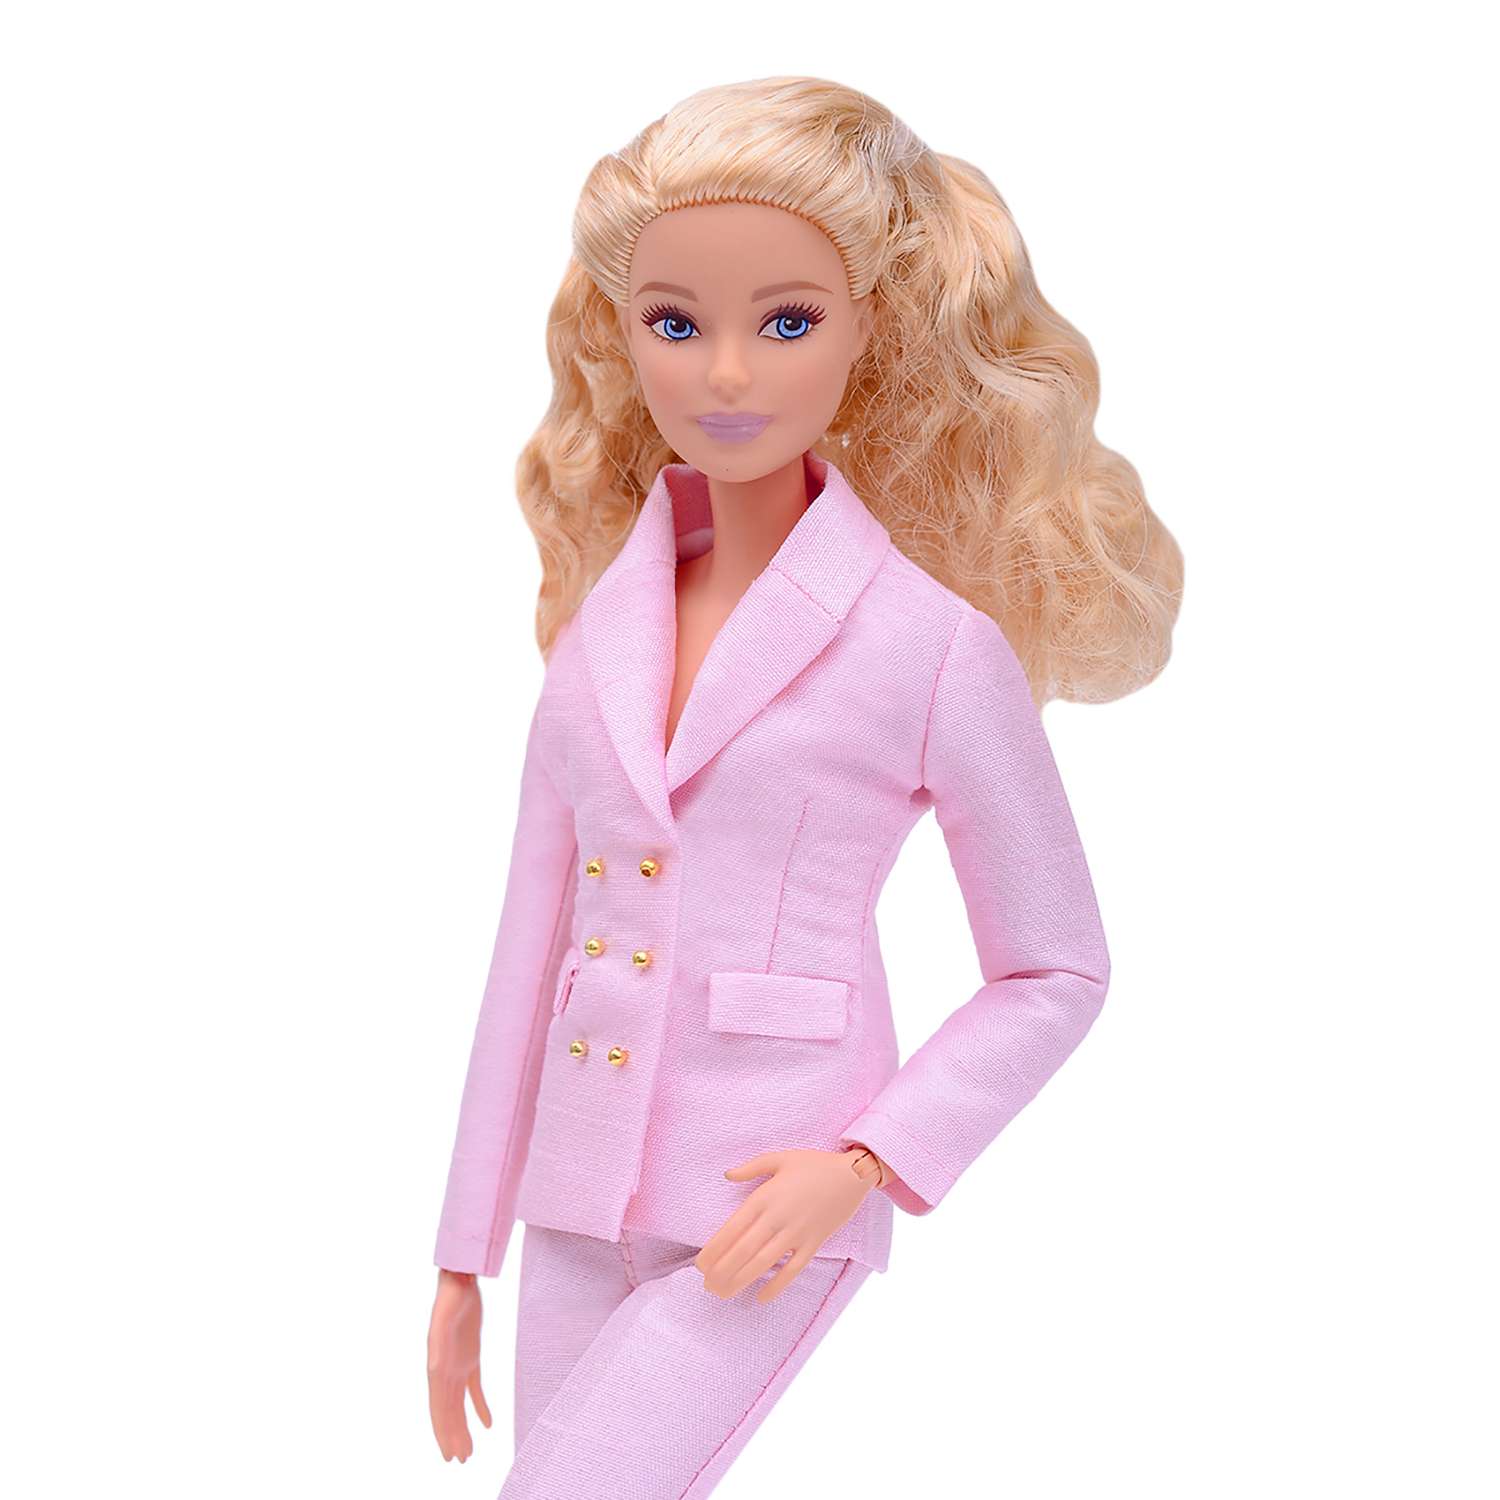 Шелковый брючный костюм Эленприв Светло-розовый для куклы 29 см типа Барби FA-011-04 - фото 5